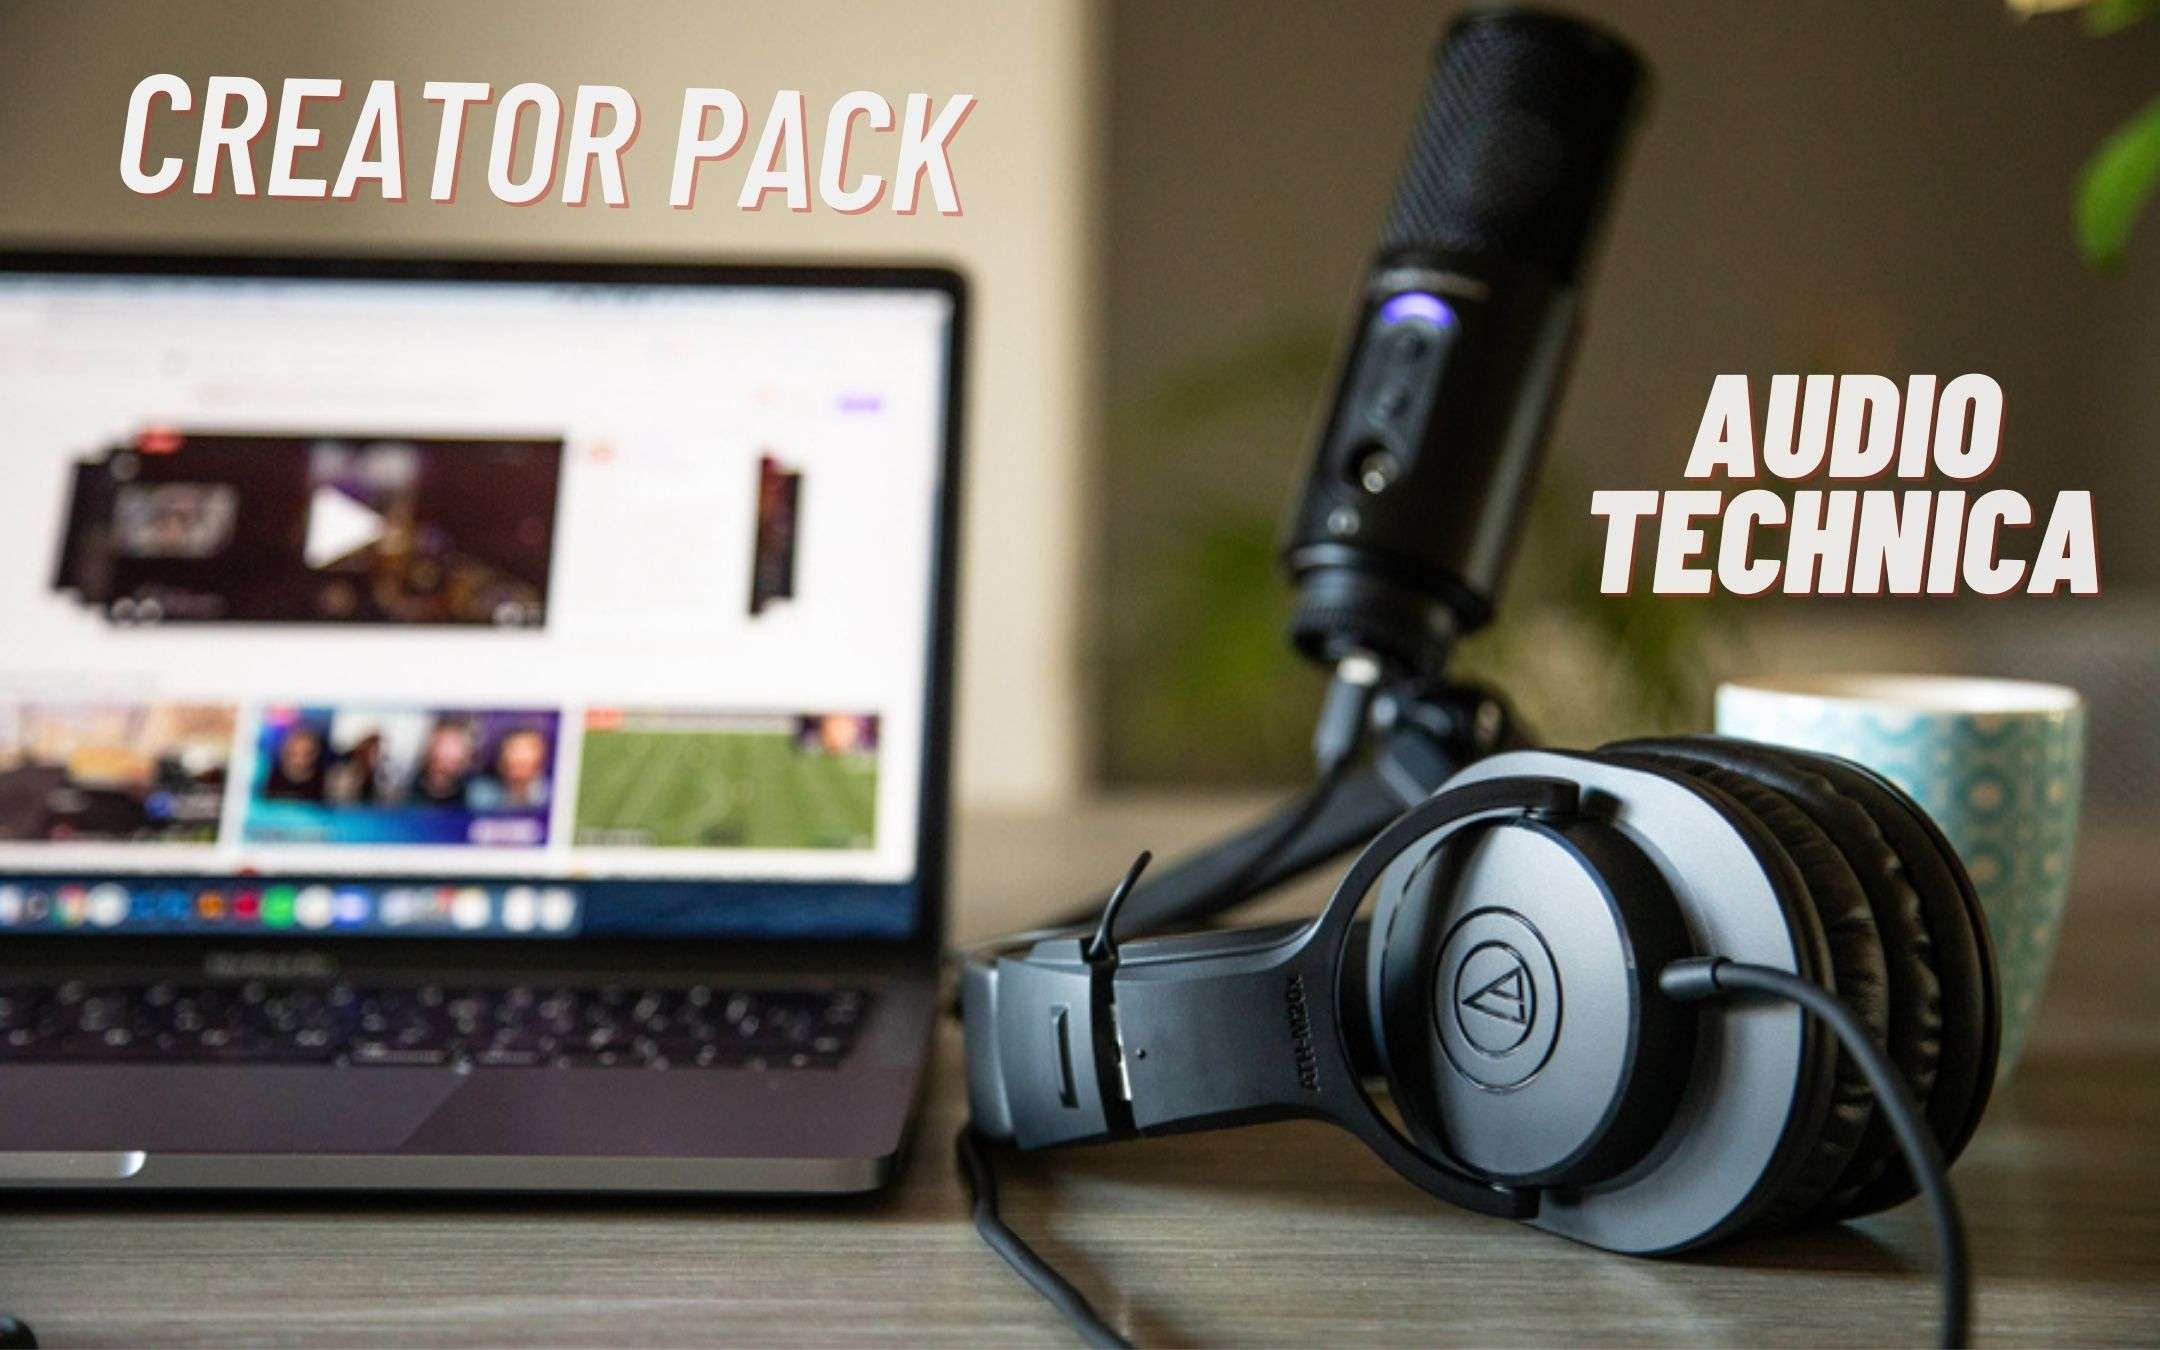 Audio Technica: ecco il Creator Pack per i podcaster